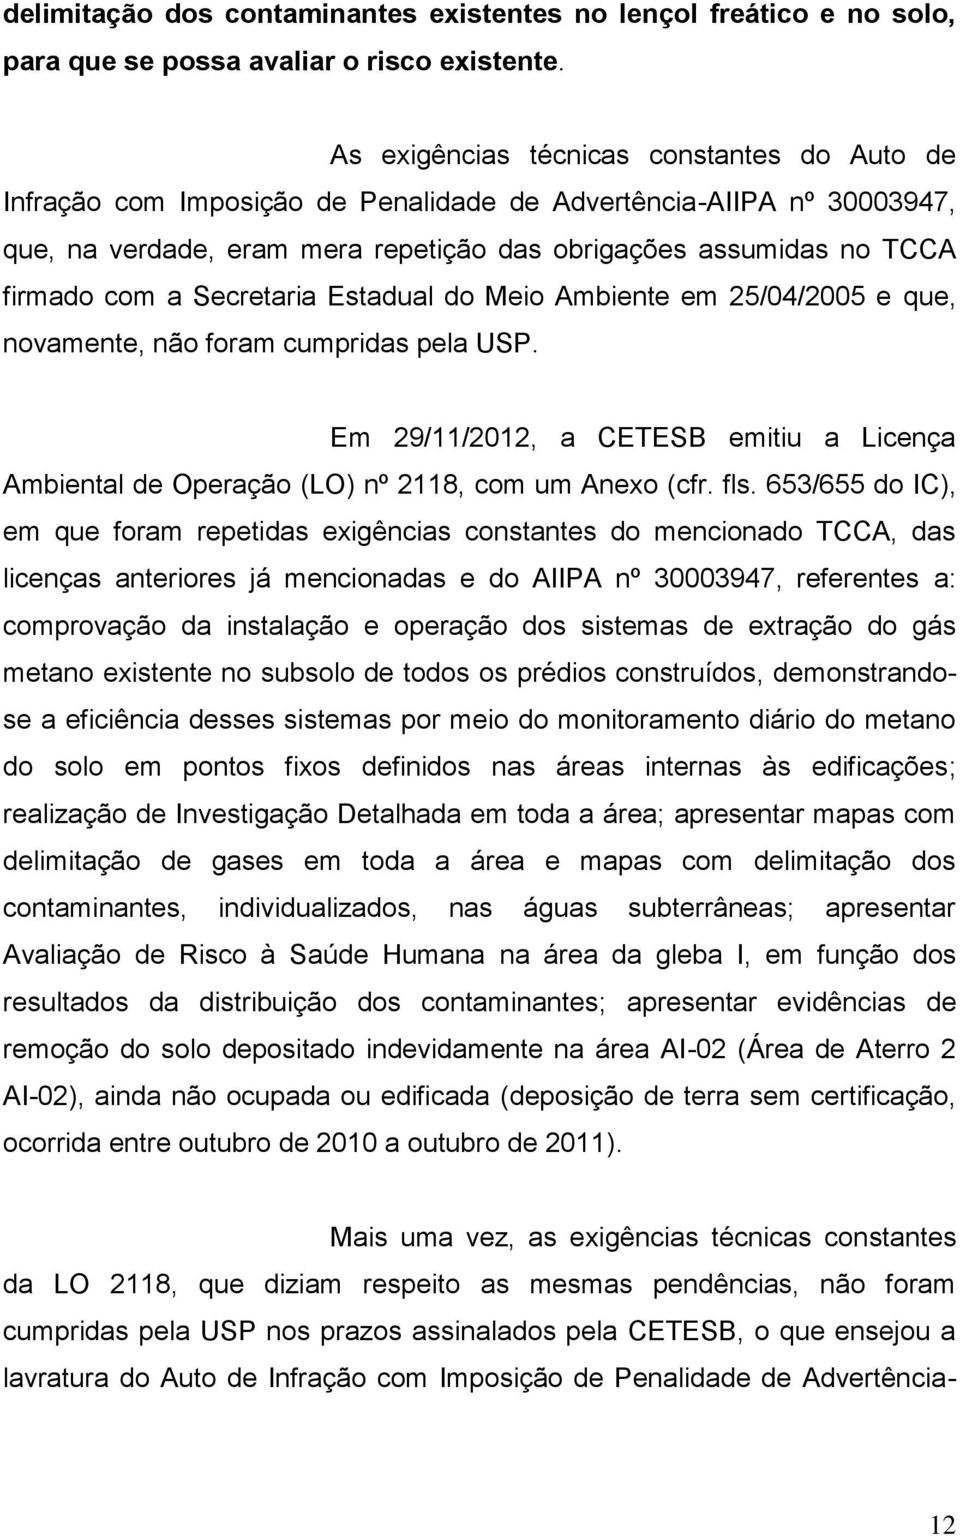 Secretaria Estadual do Meio Ambiente em 25/04/2005 e que, novamente, não foram cumpridas pela USP. Em 29/11/2012, a CETESB emitiu a Licença Ambiental de Operação (LO) nº 2118, com um Anexo (cfr. fls.